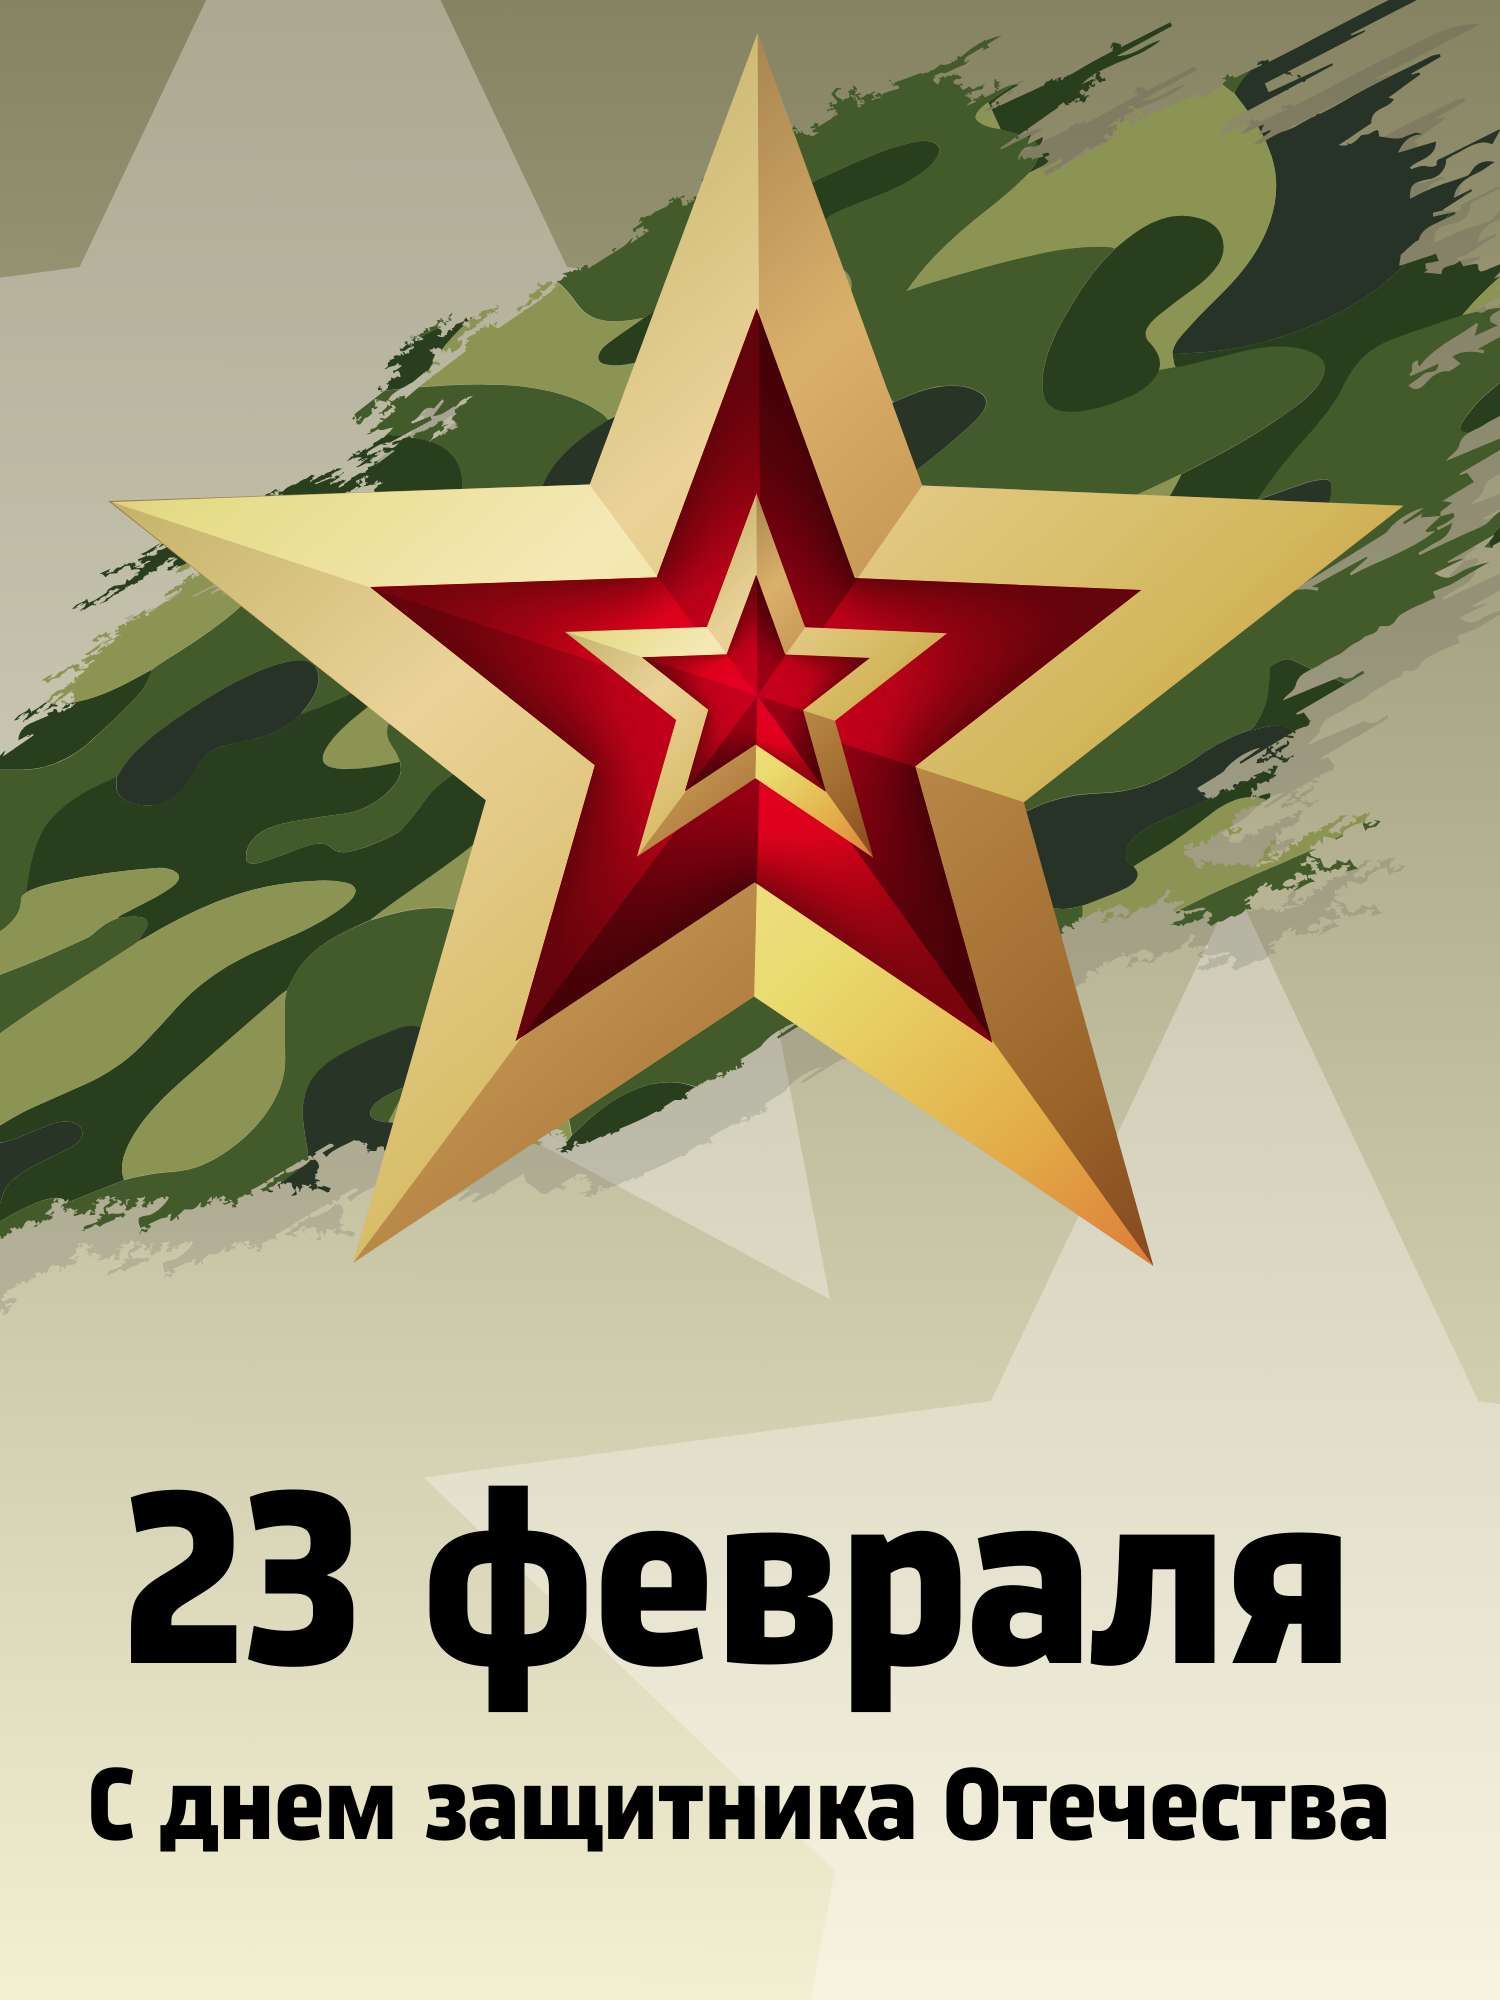 Шаблон квадратной открытки на тему 23 февраля с флагом России